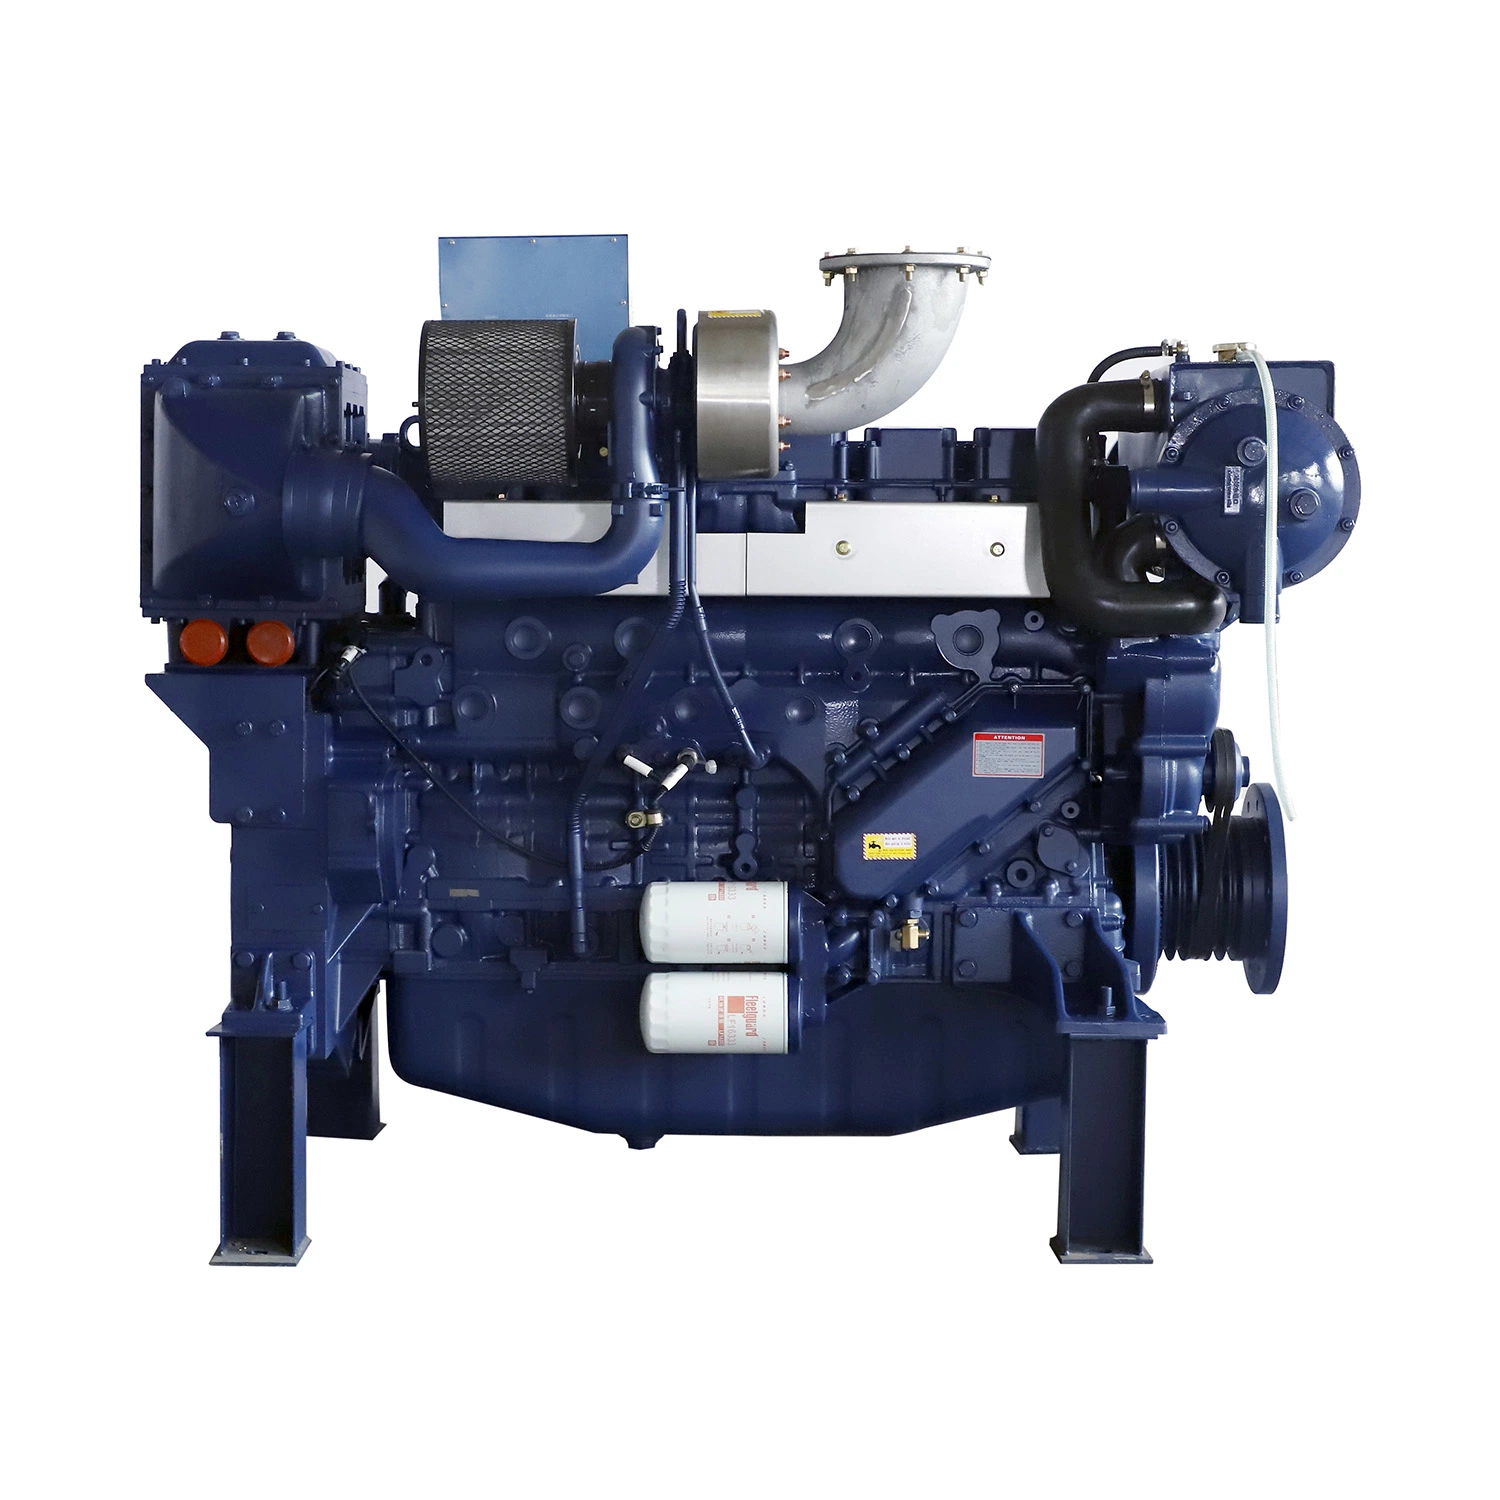 Lambert Power 400HP 2100R 6 Zylinder 4-Takt Nassauge Turbolader-Tnter-Kühler Marine-Hauptdieselmotor